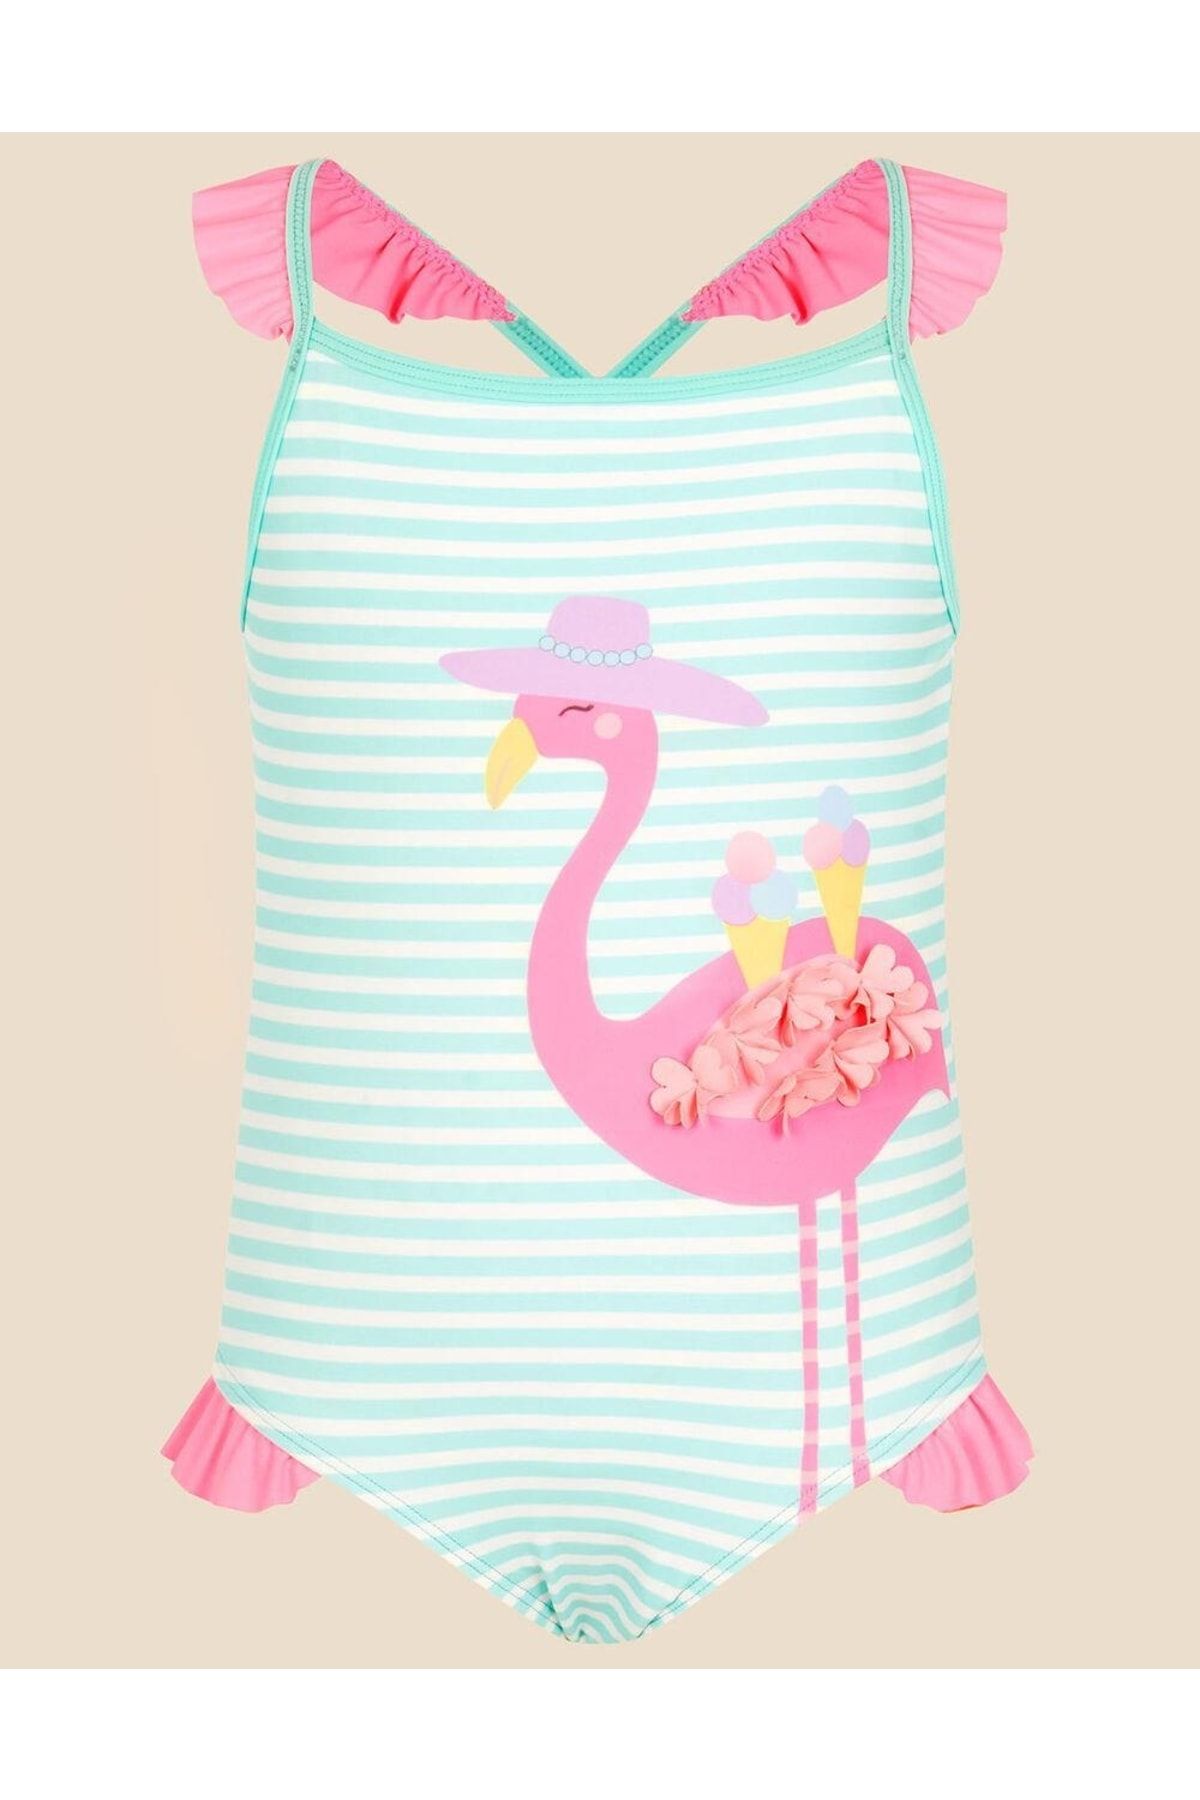 Accessorize Kız Çocuk Için Flamingo Desenli Mayo